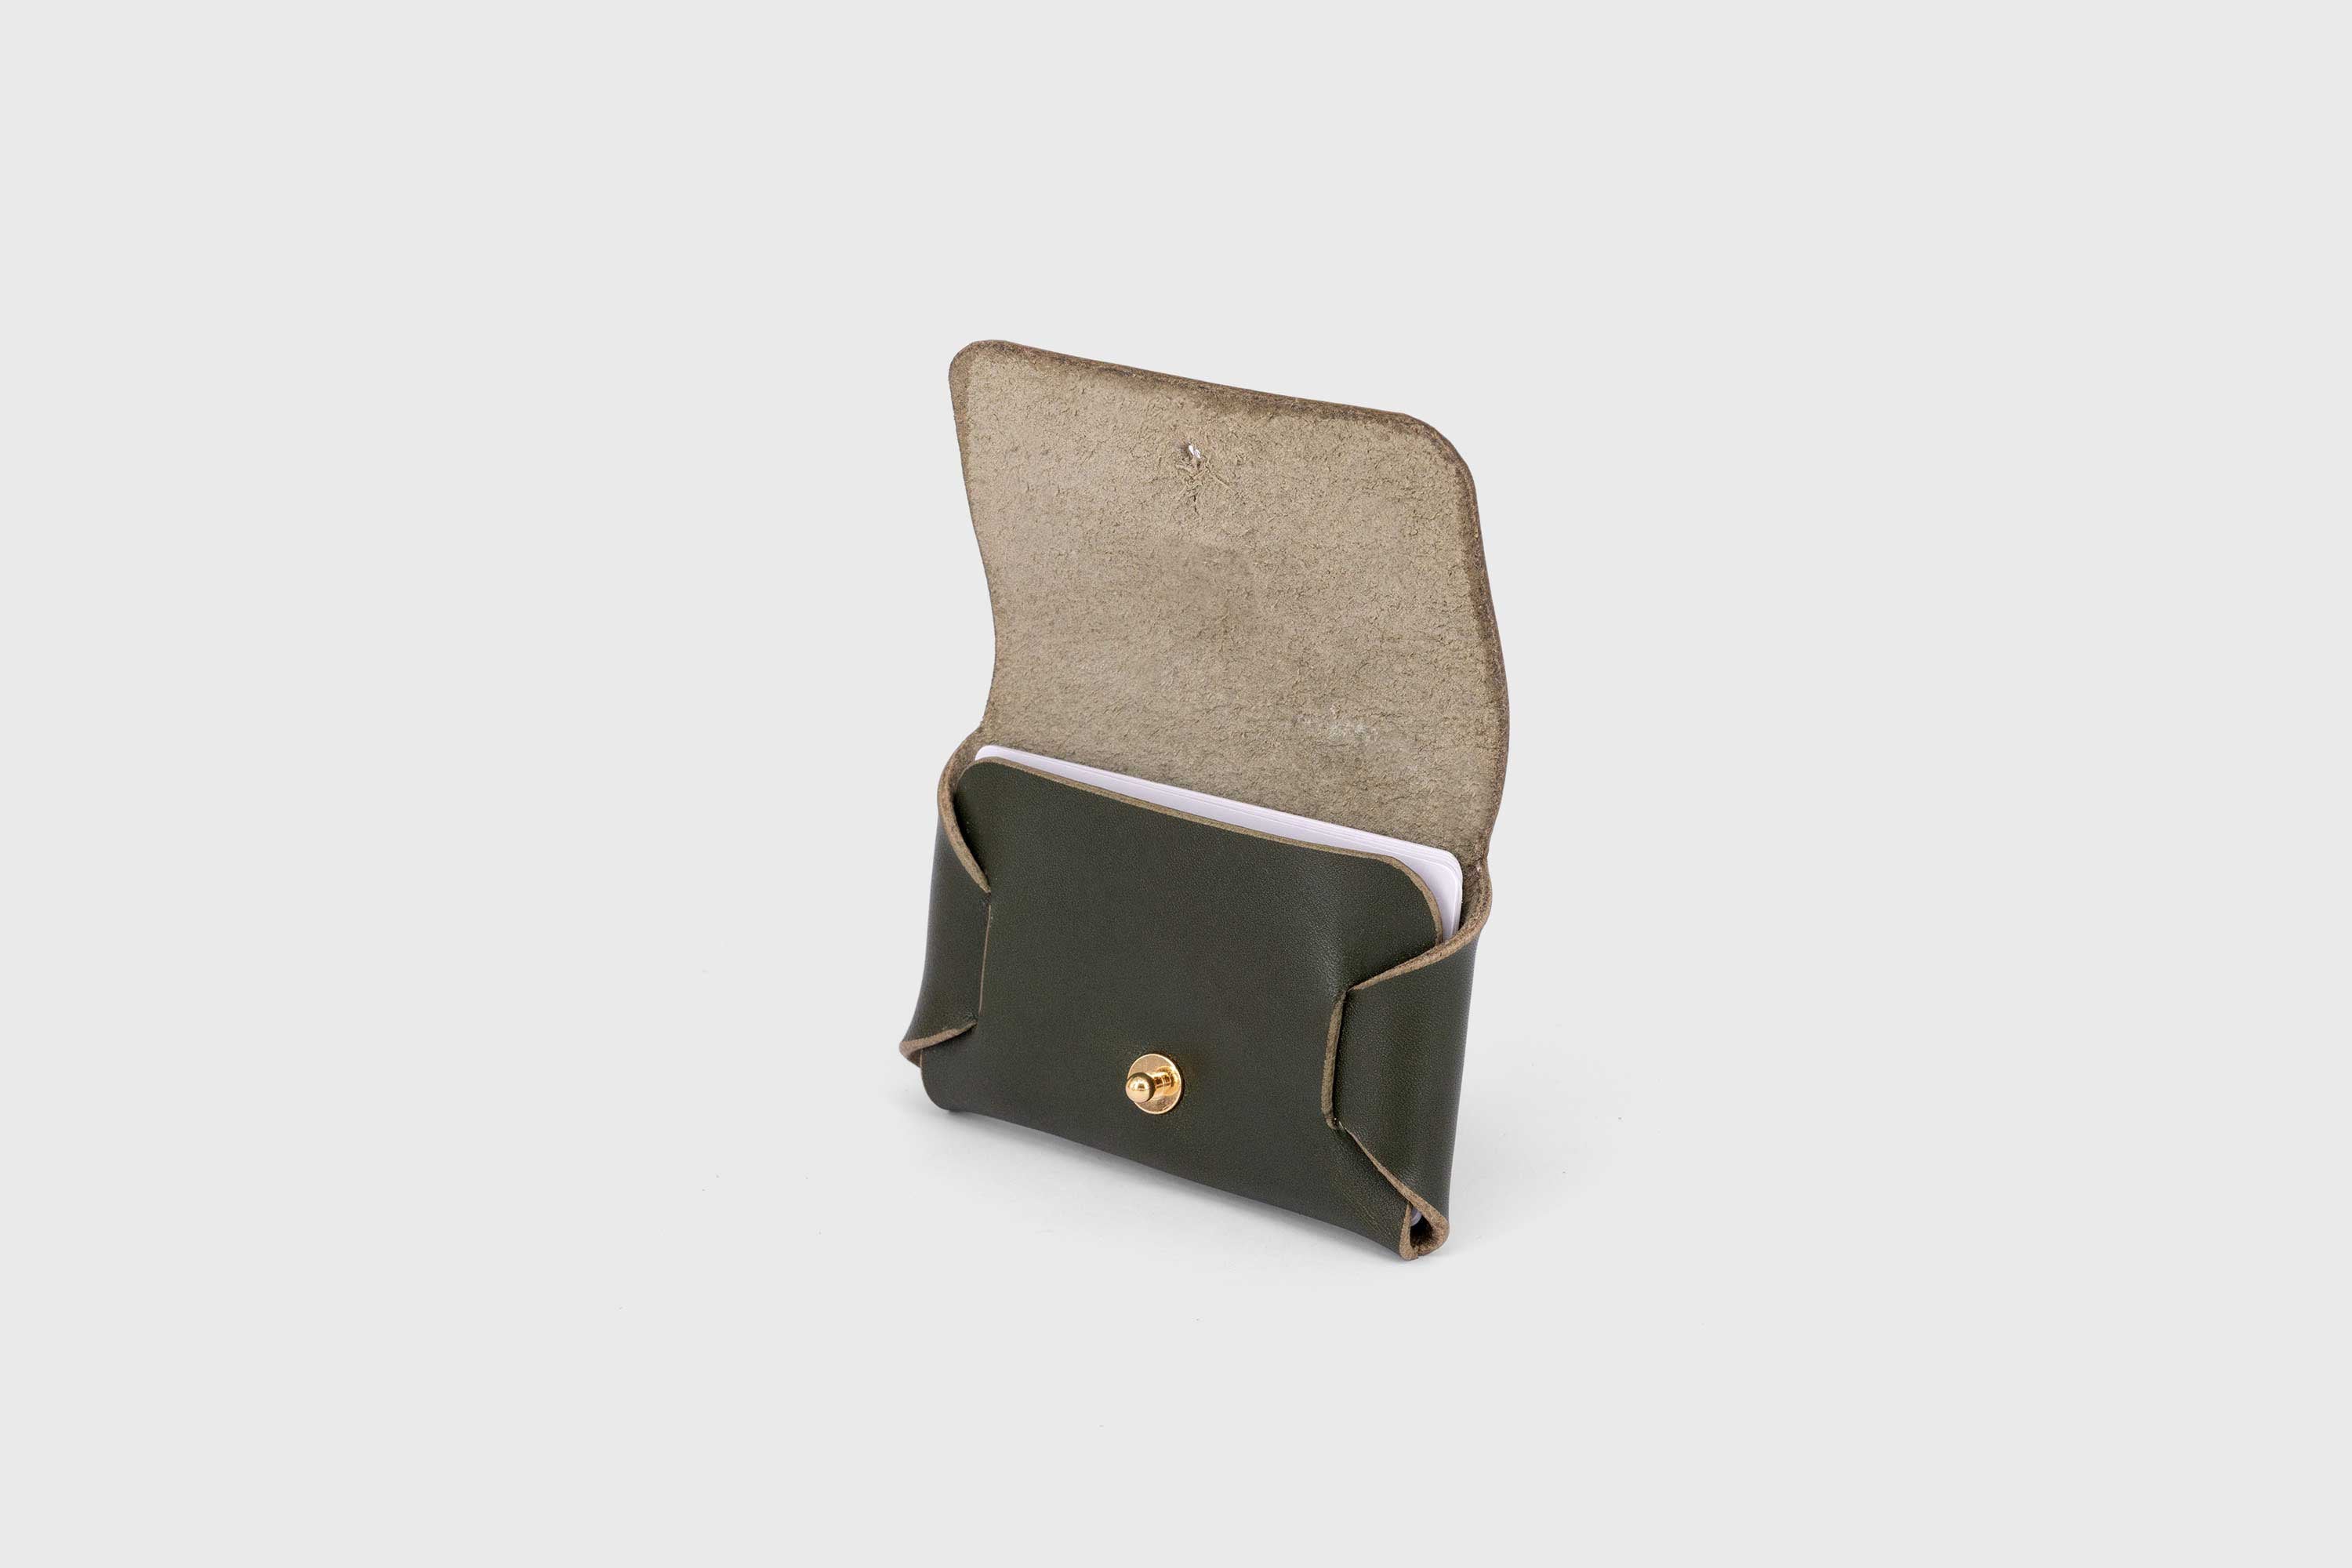 Leather wallet cardholder horizontal design olive green color minimalist design atelier madre manuel dreesmann barcelona